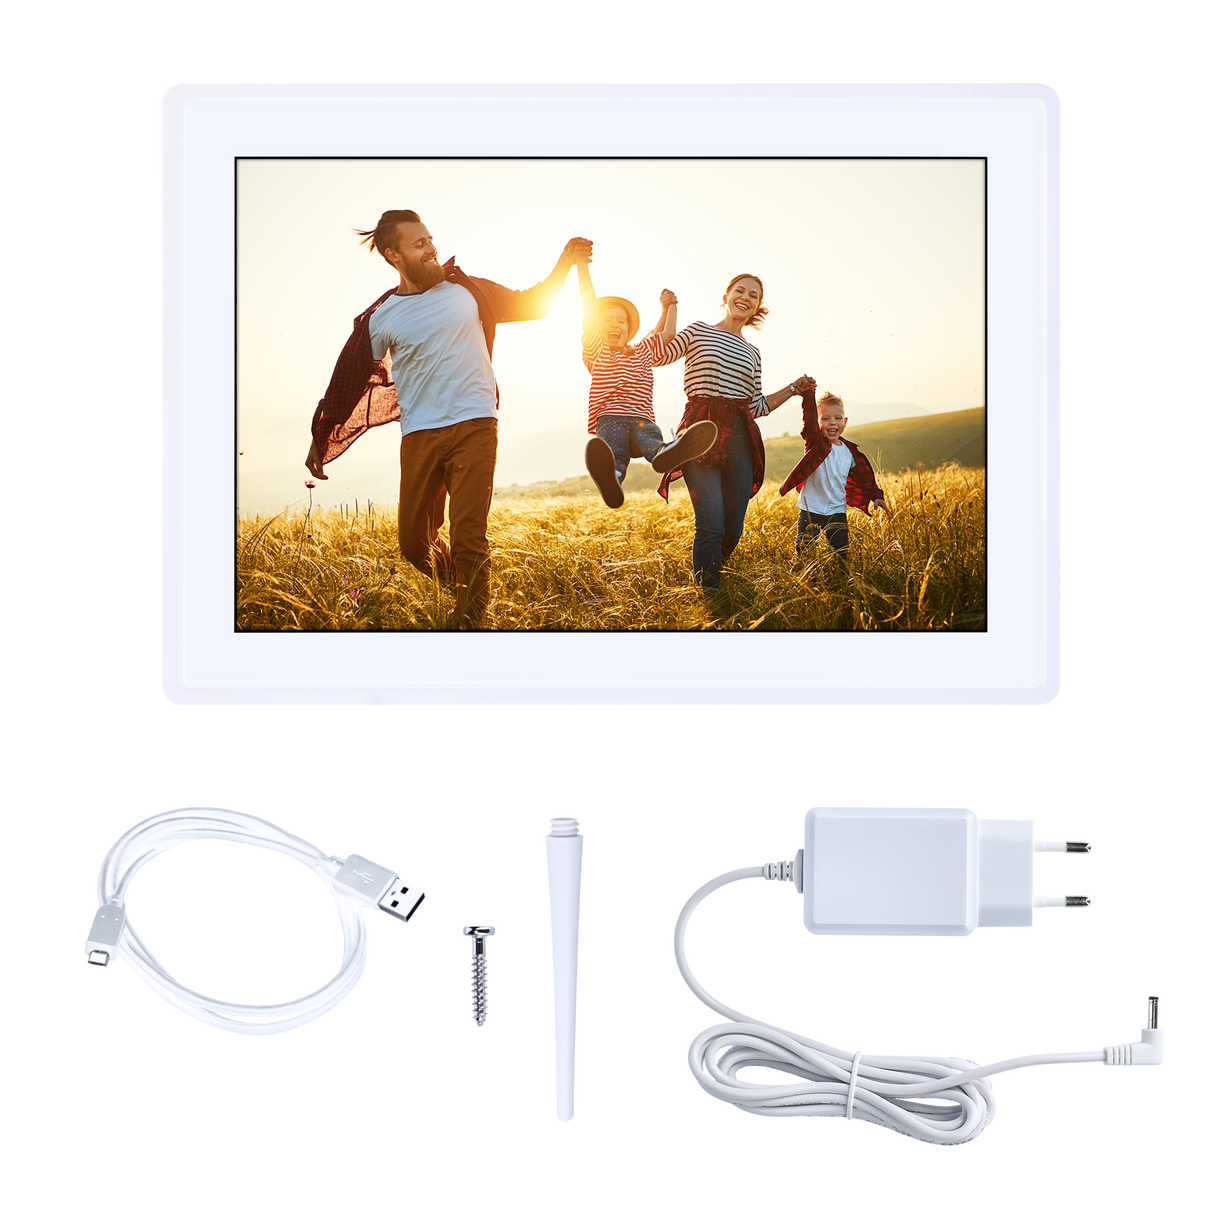 Smart Frame WiFi 100 - Digital picture frame